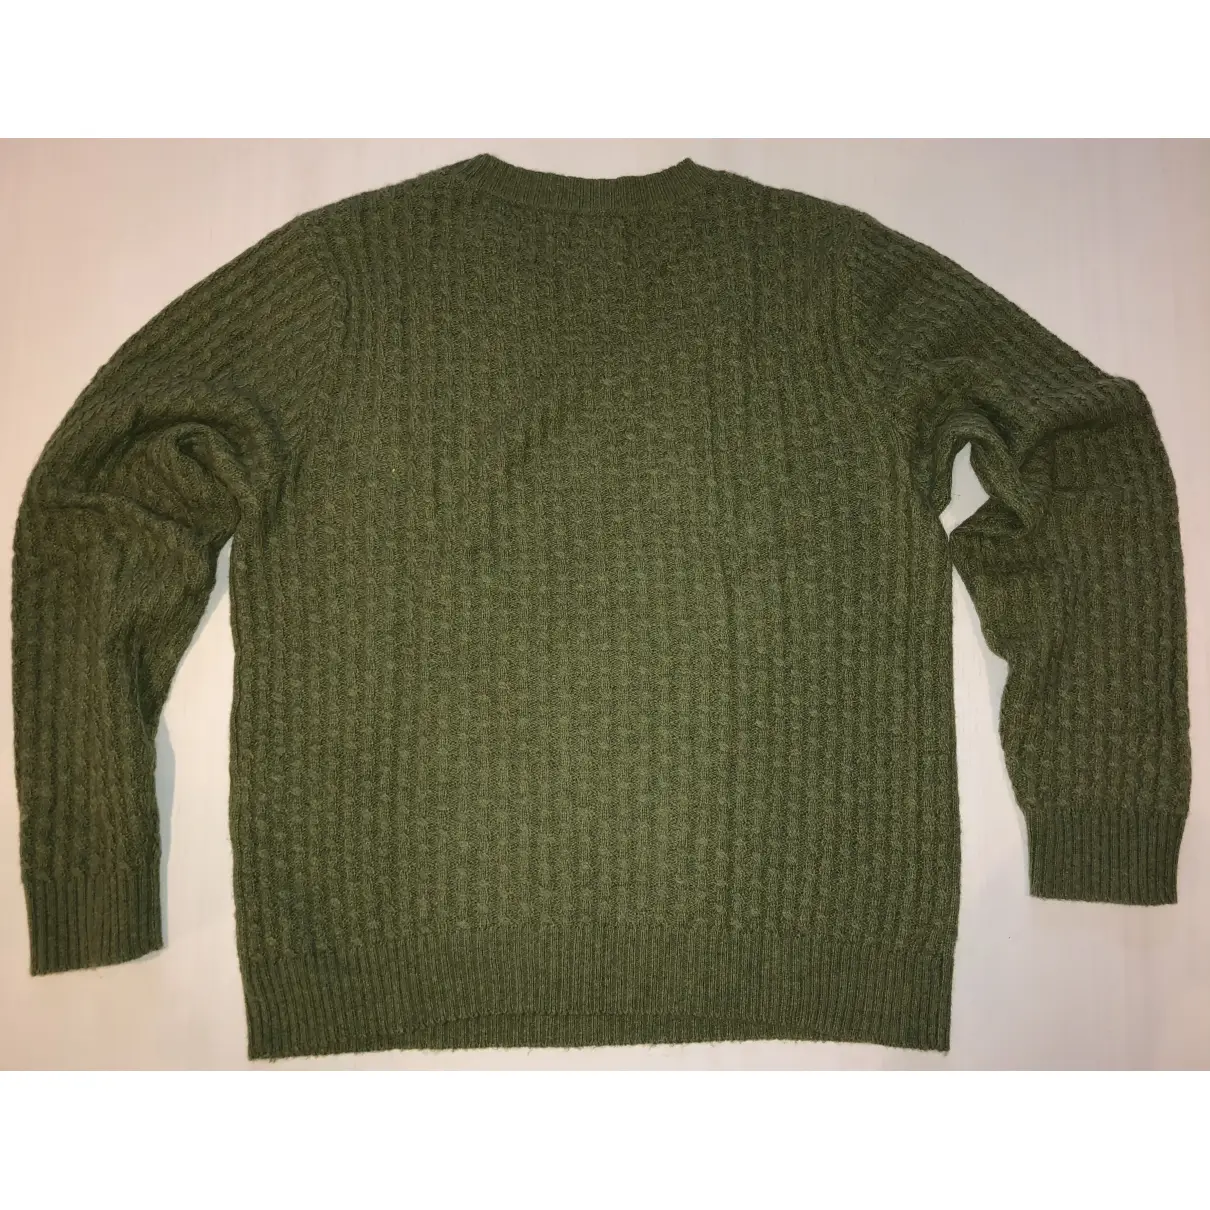 Buy Gant Rugger Green Cotton Knitwear & Sweatshirt online